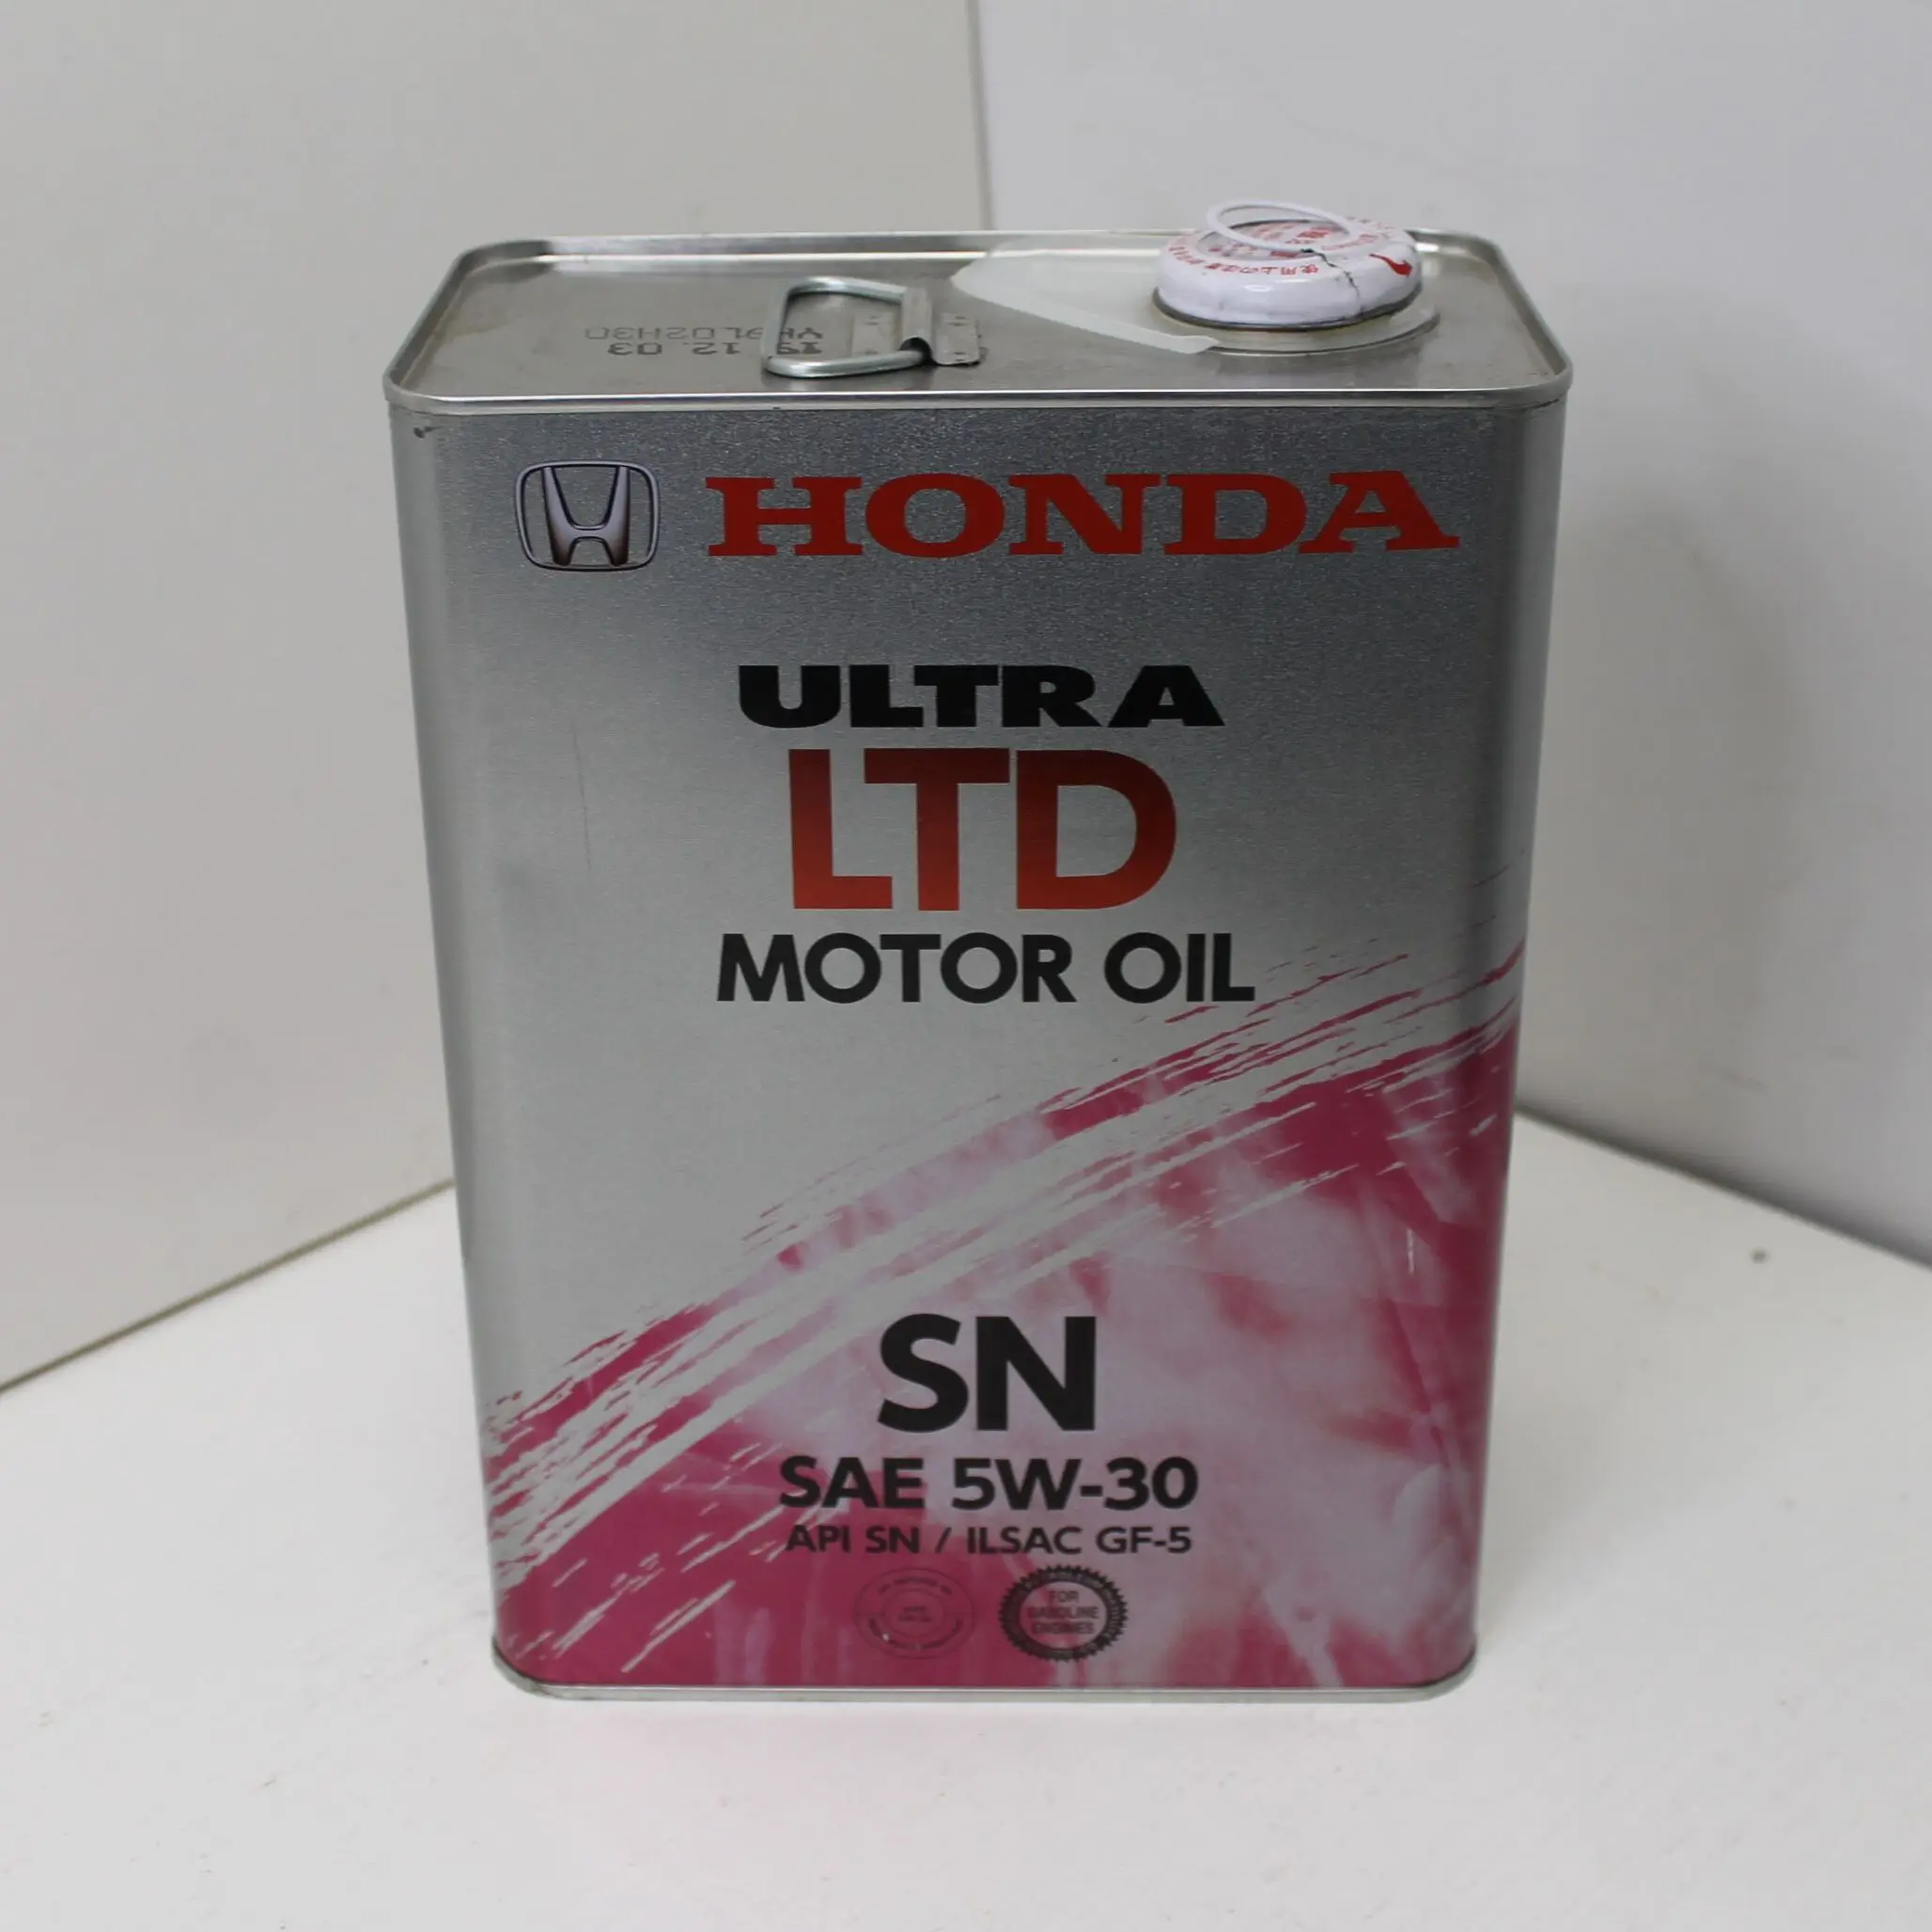 Honda Ultra Ltd SP 5w-30 1 литр.